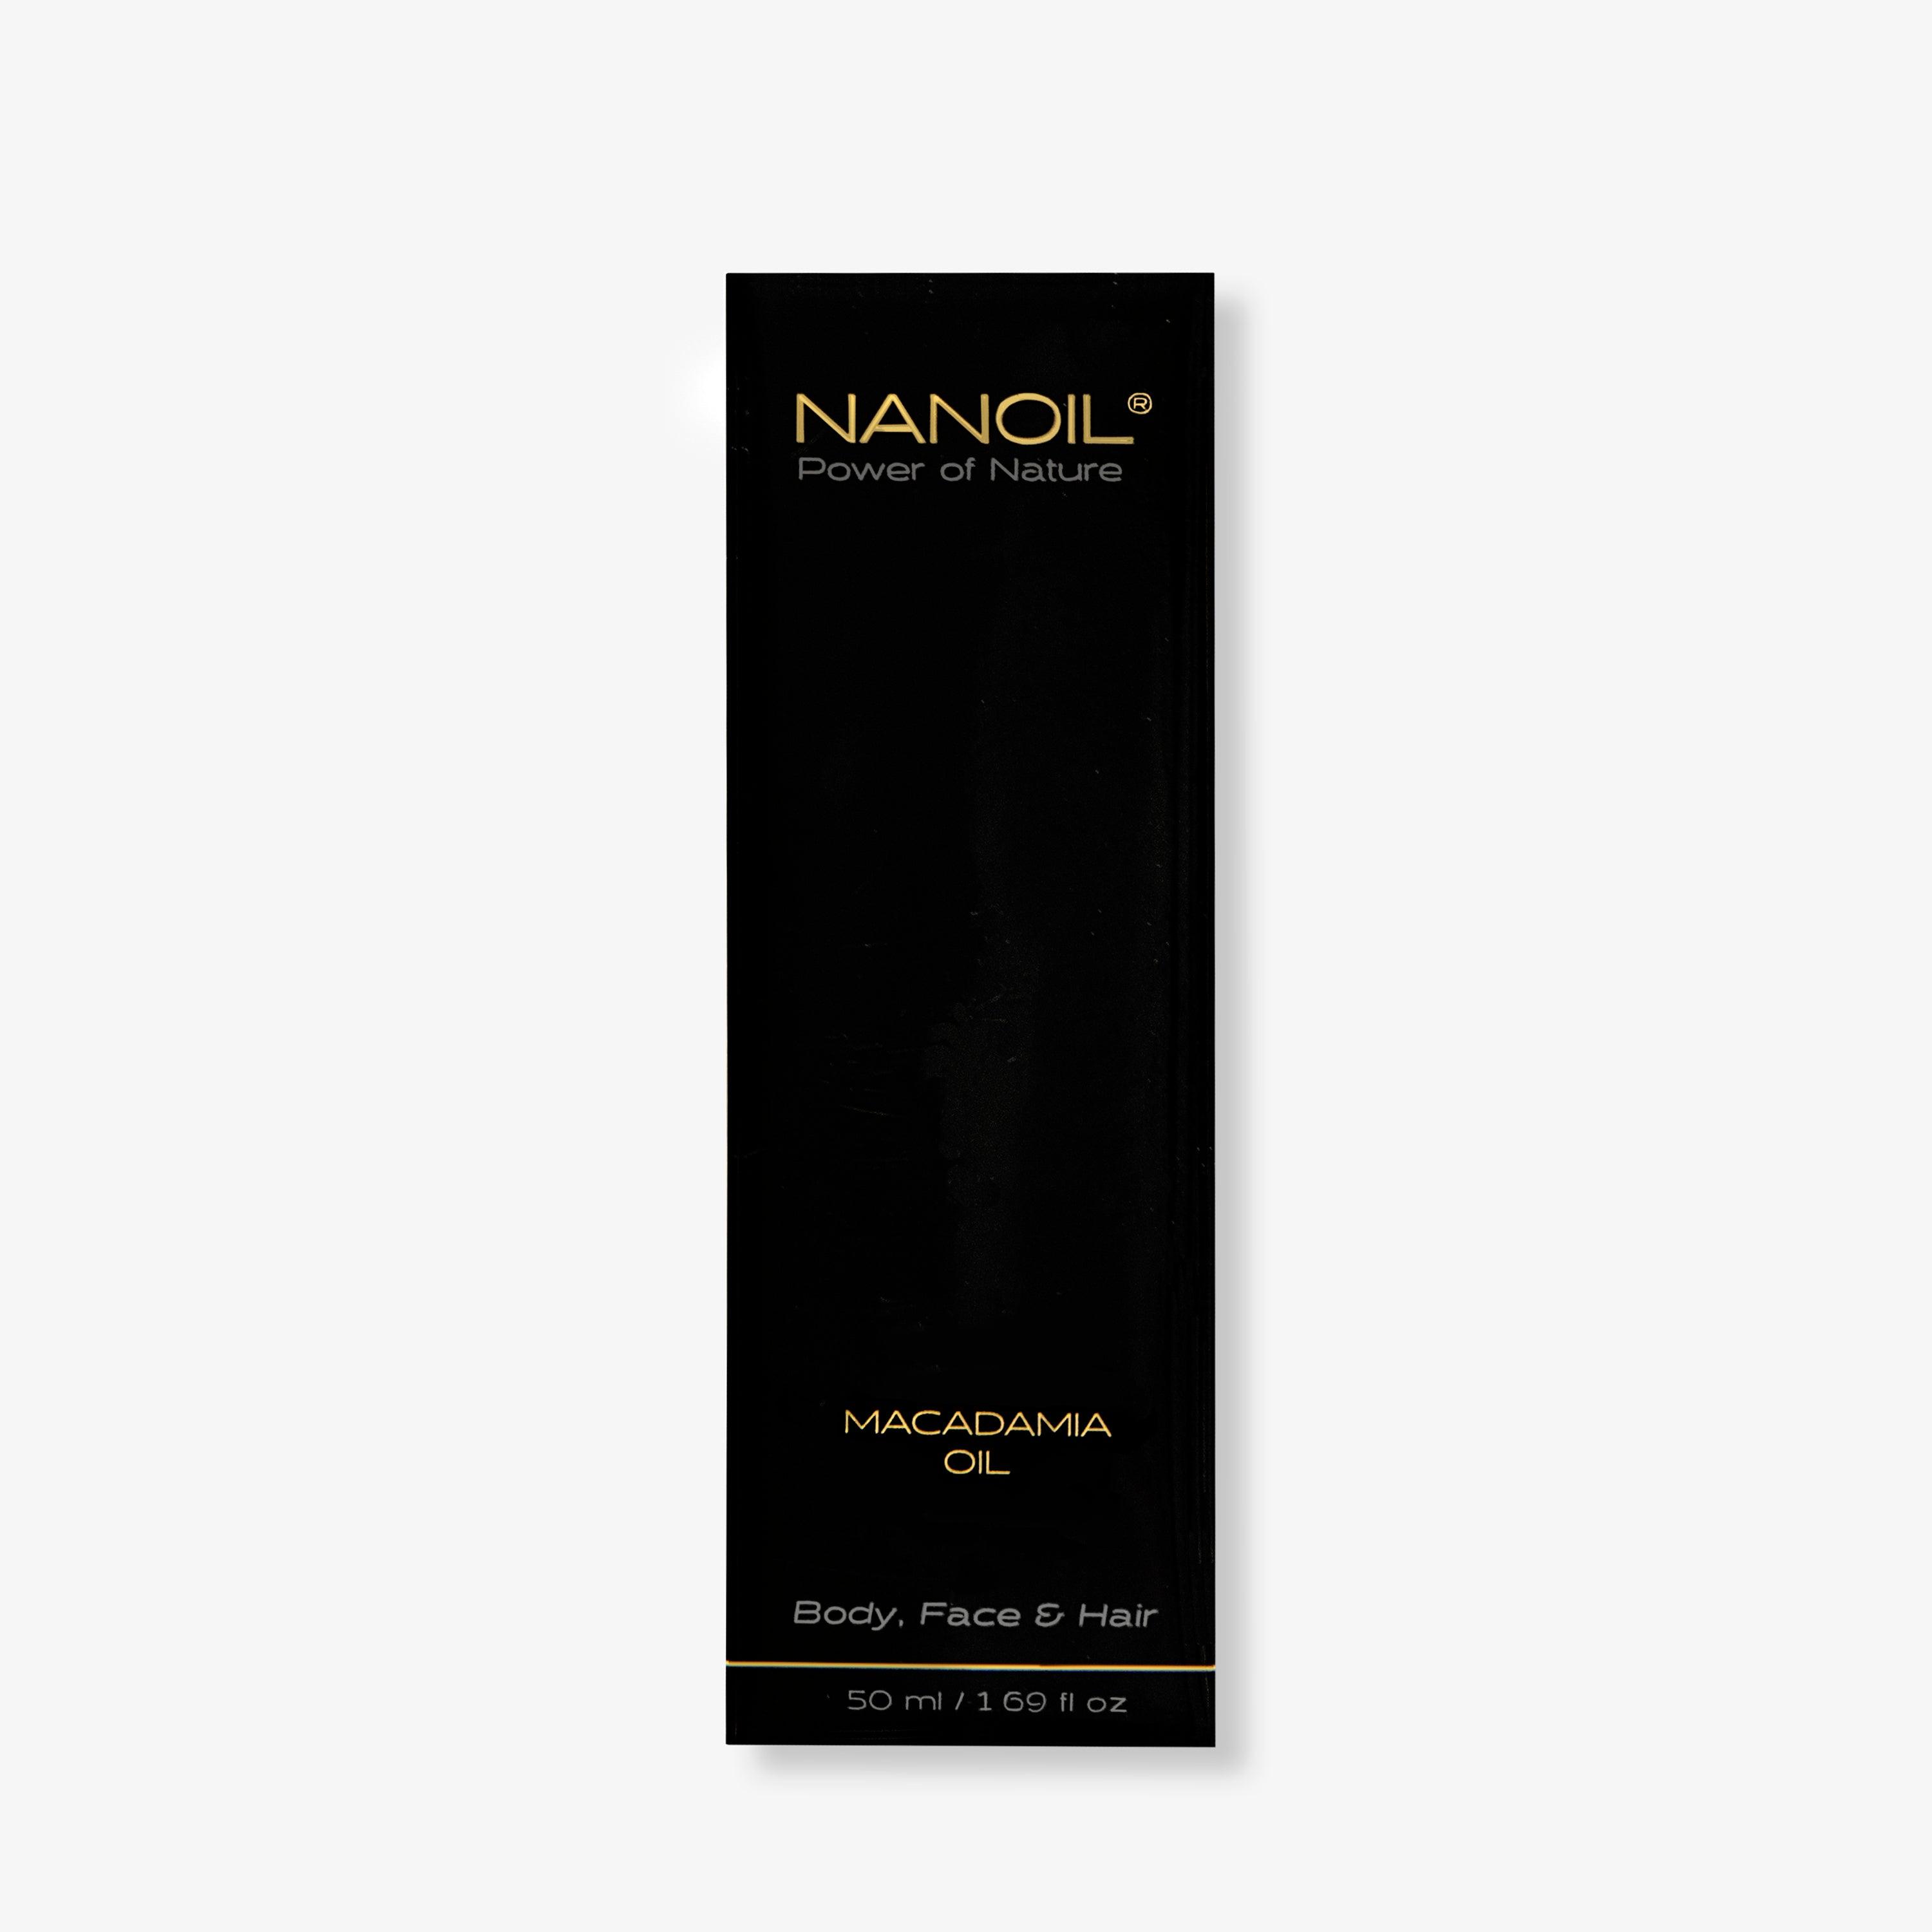 Nanoil macadamia oil - SerumGeeks